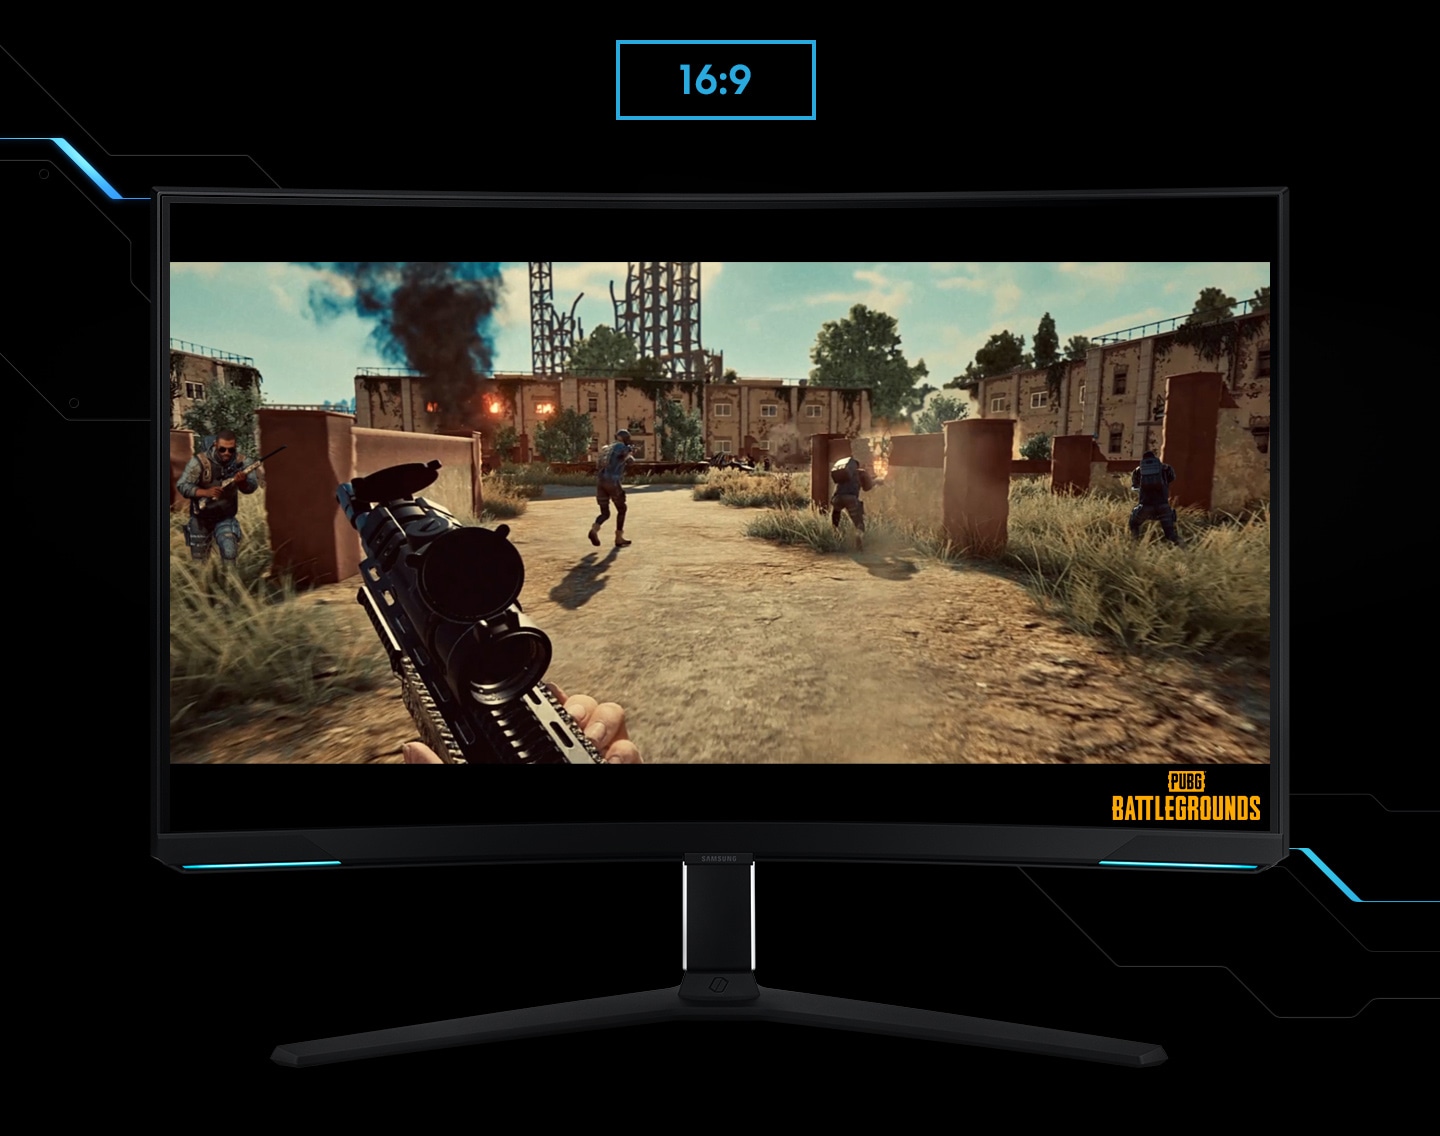 Monitor prikazuje zorno kot igralca v igri streljanja. Igralec teče po bojnem območju z mitraljezom. Ko je zaslon razširjen s razmerja 16:9 na 21:9, se v levem kotu pokaže nevidni sovražnik. Logotip "Battleground" je prikazan v spodnjem desnem kotu zaslona.